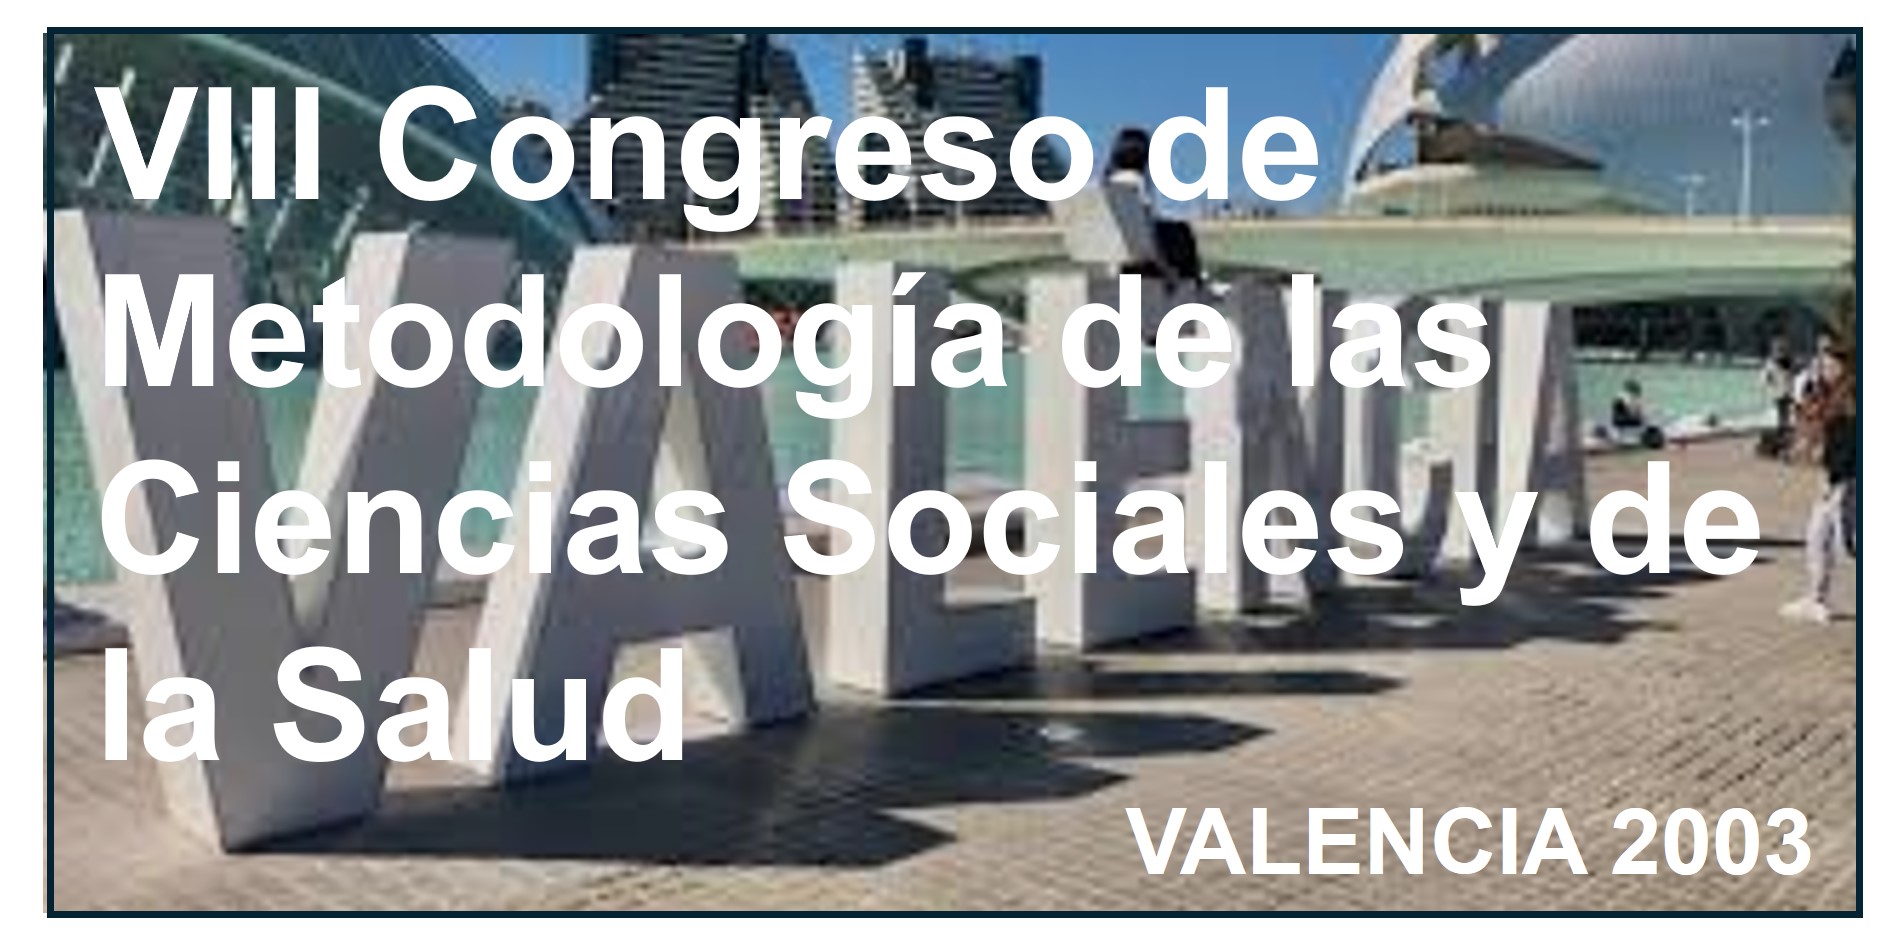    VIII Congreso de Metodología de las Ciencias Sociales y de la Salud